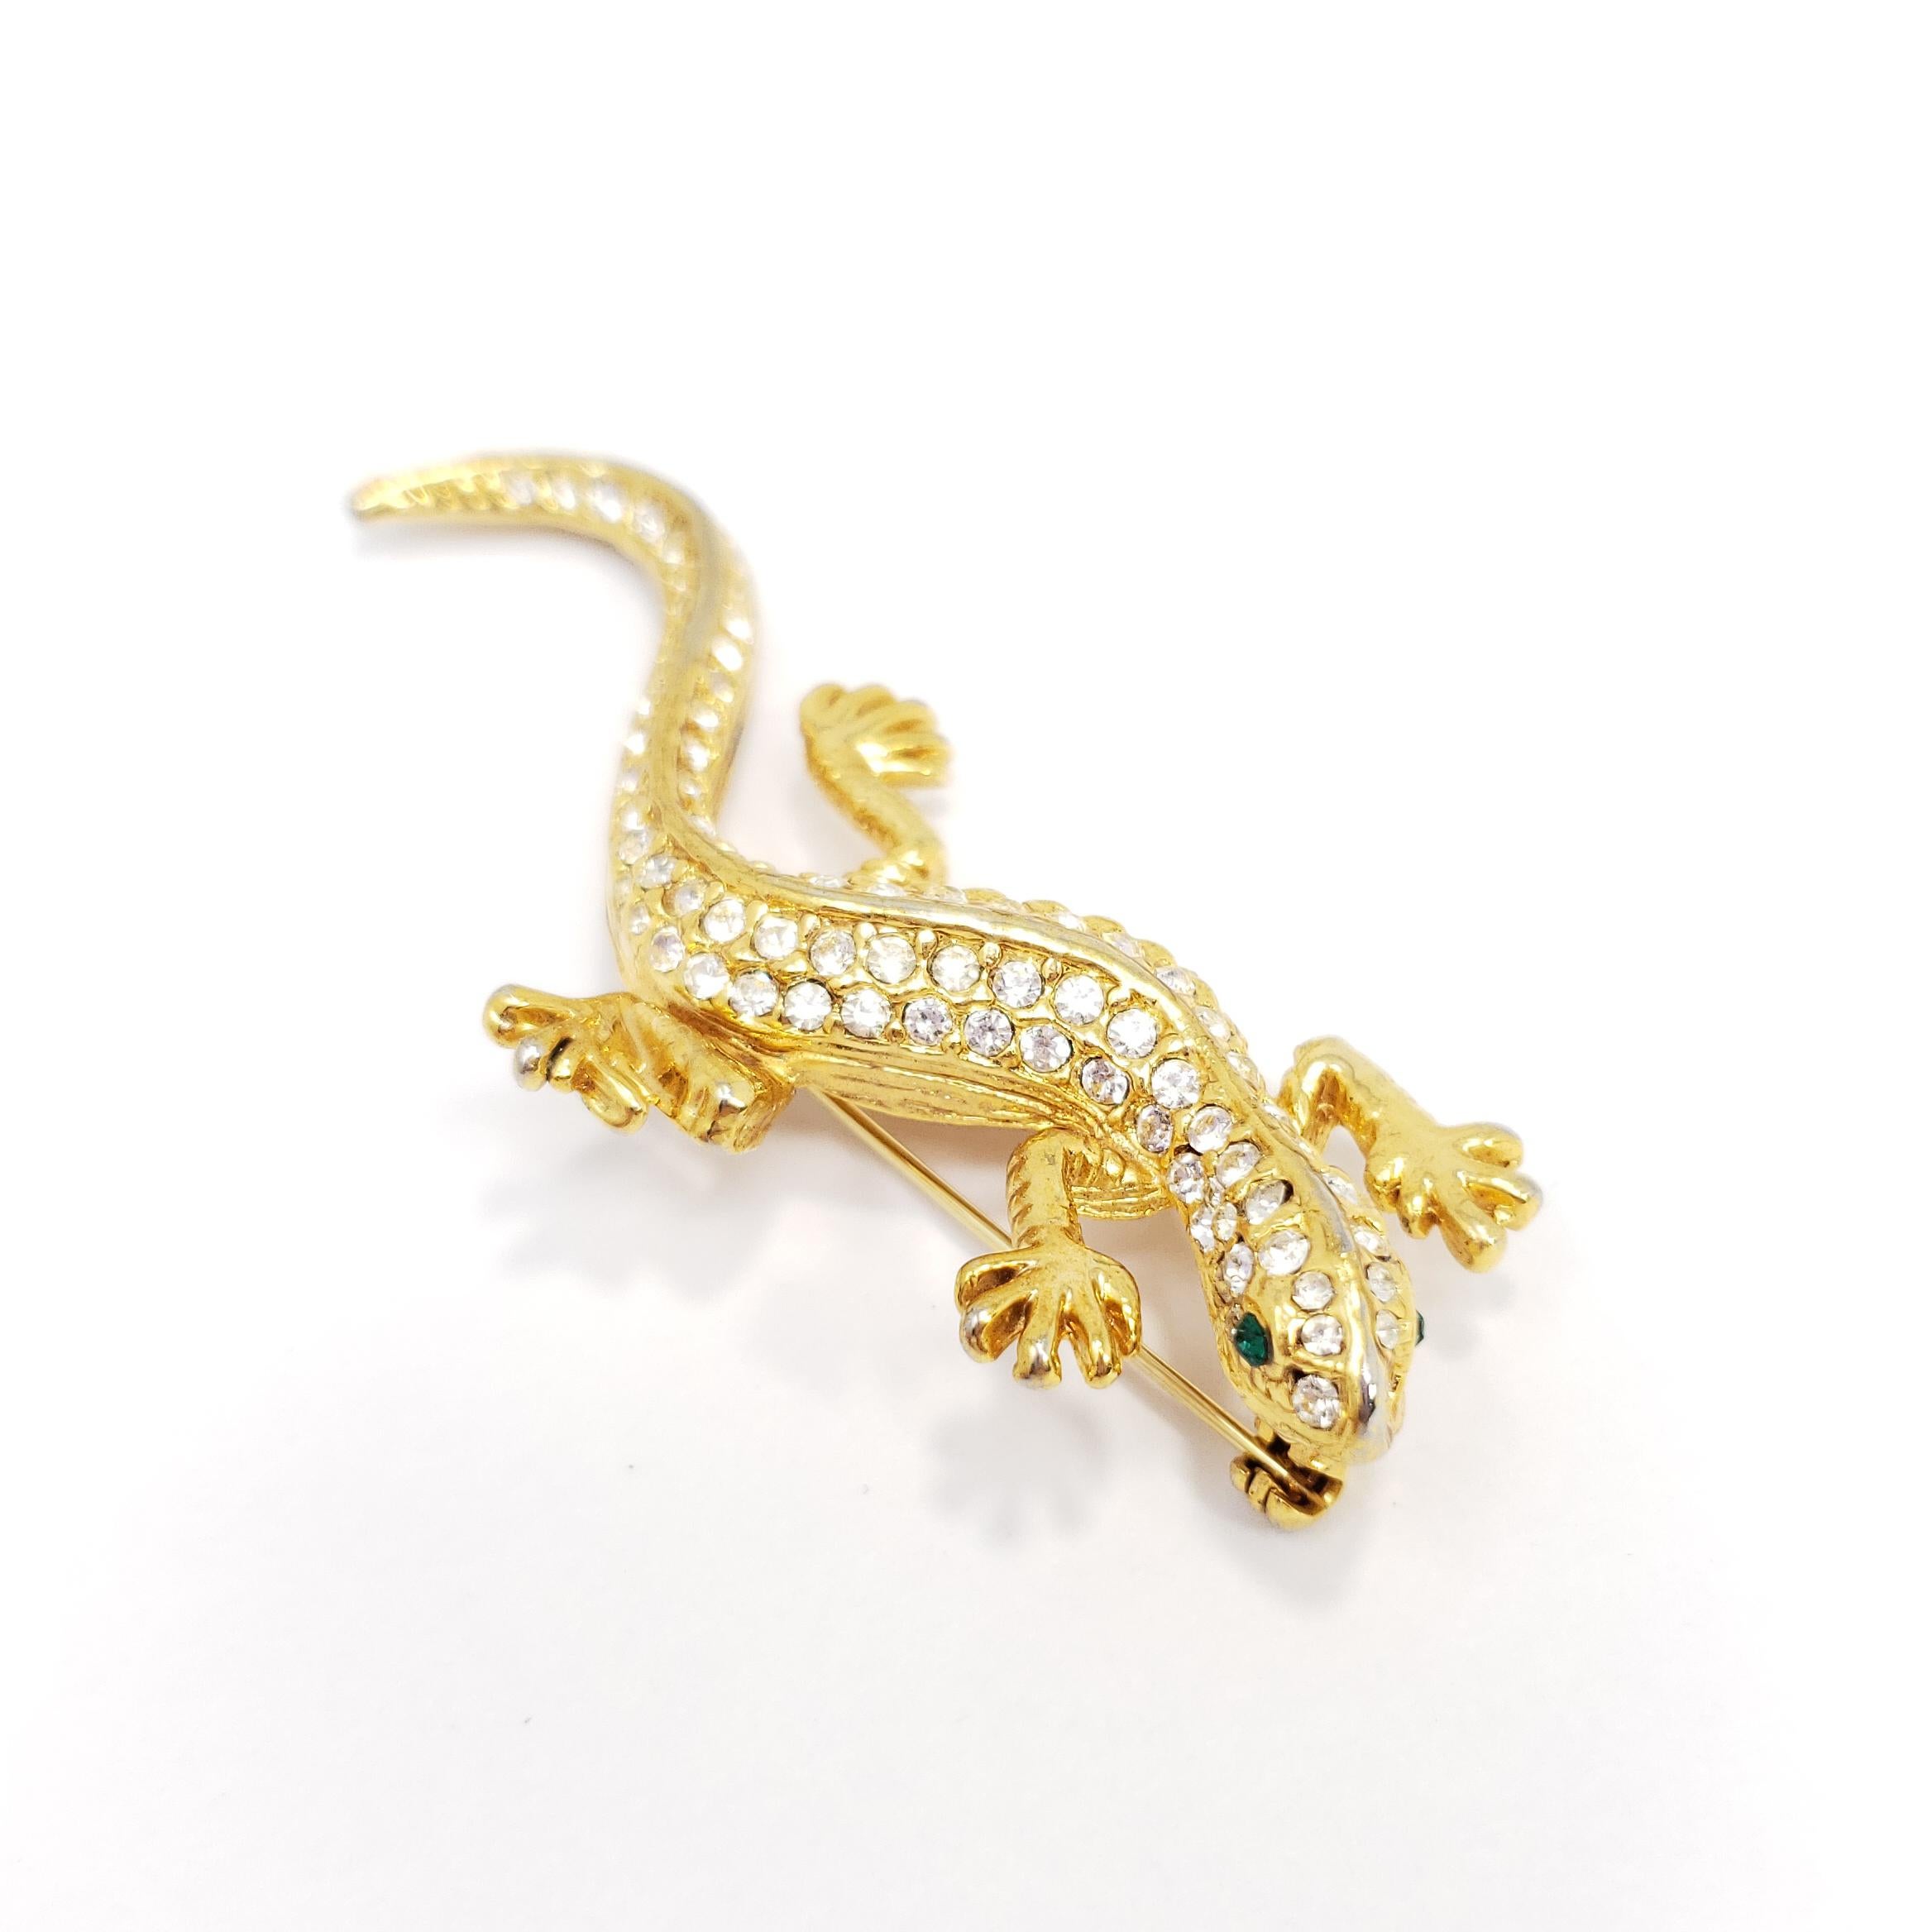 Cette salamandre élégante est décorée de cristaux clairs étincelants et d'yeux de couleur émeraude. Une broche rétro glamour avec une finition dorée brillante !

Marques / poinçons / etc : USA

Une pièce vintage, comme neuve, non portée, de haute